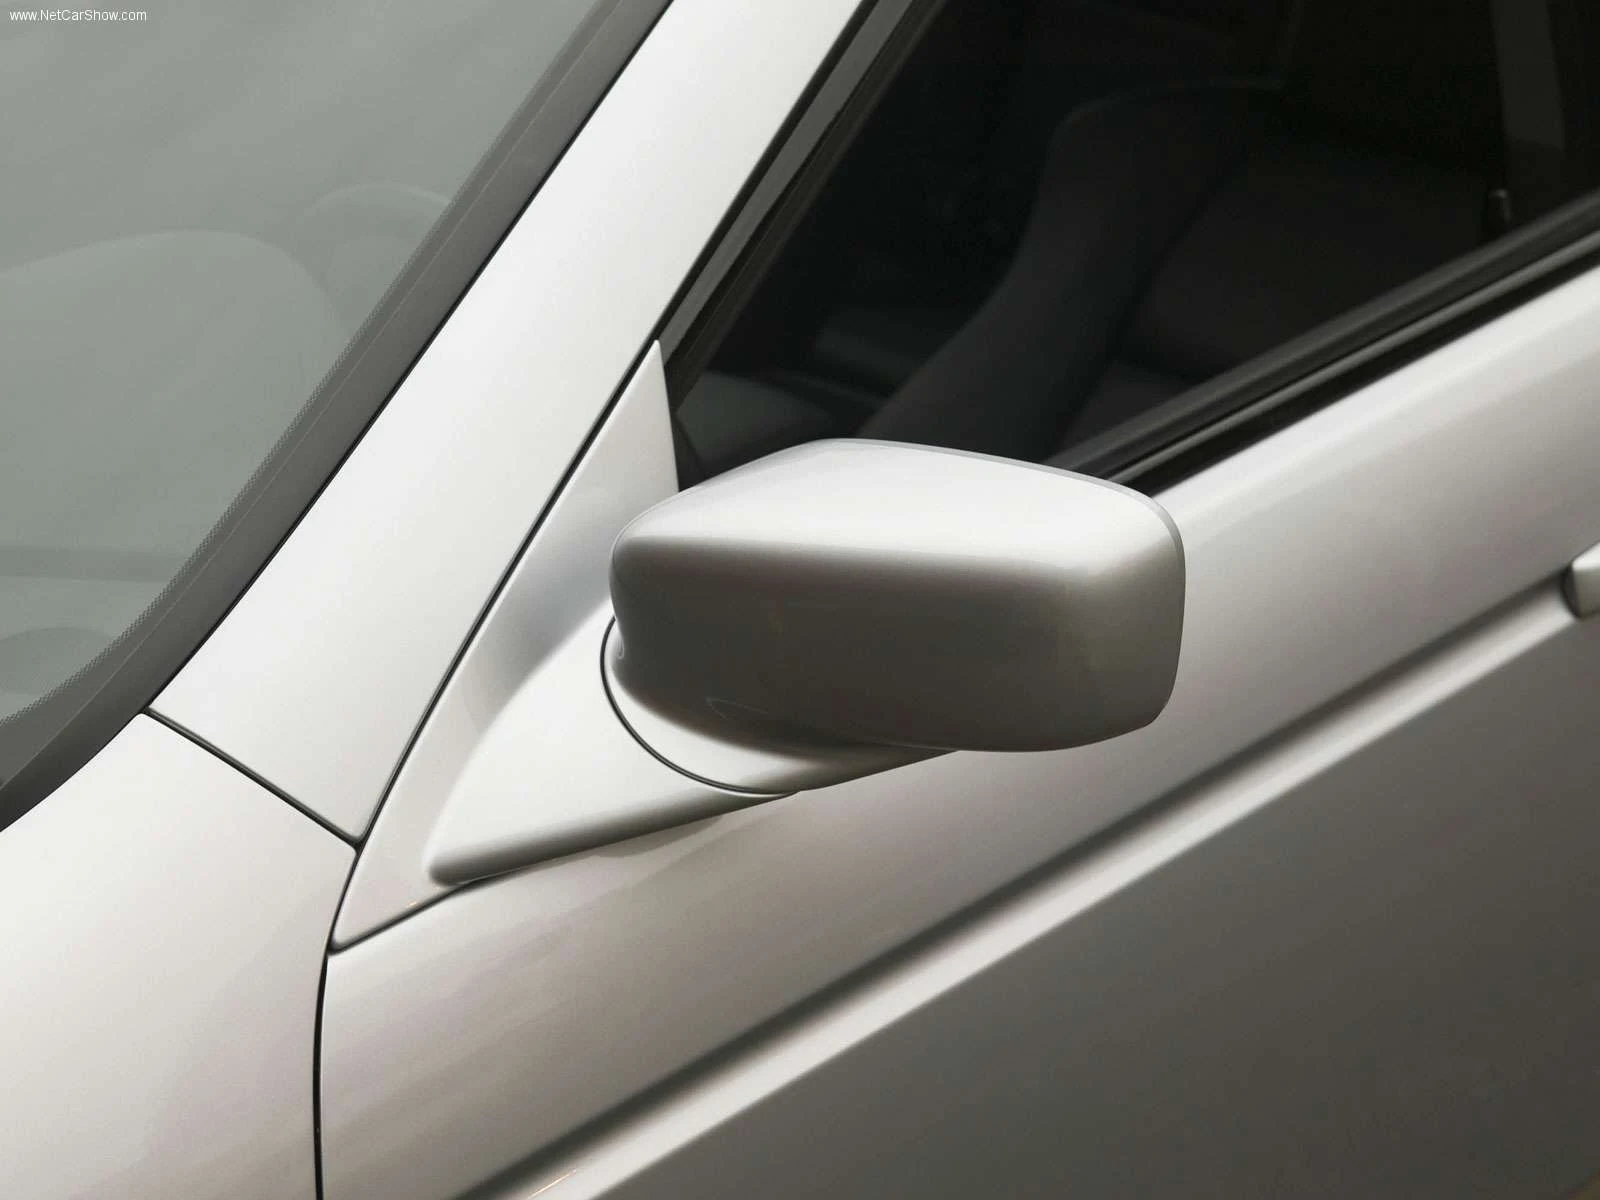 Hình ảnh xe ô tô Acura TL 2005 & nội ngoại thất